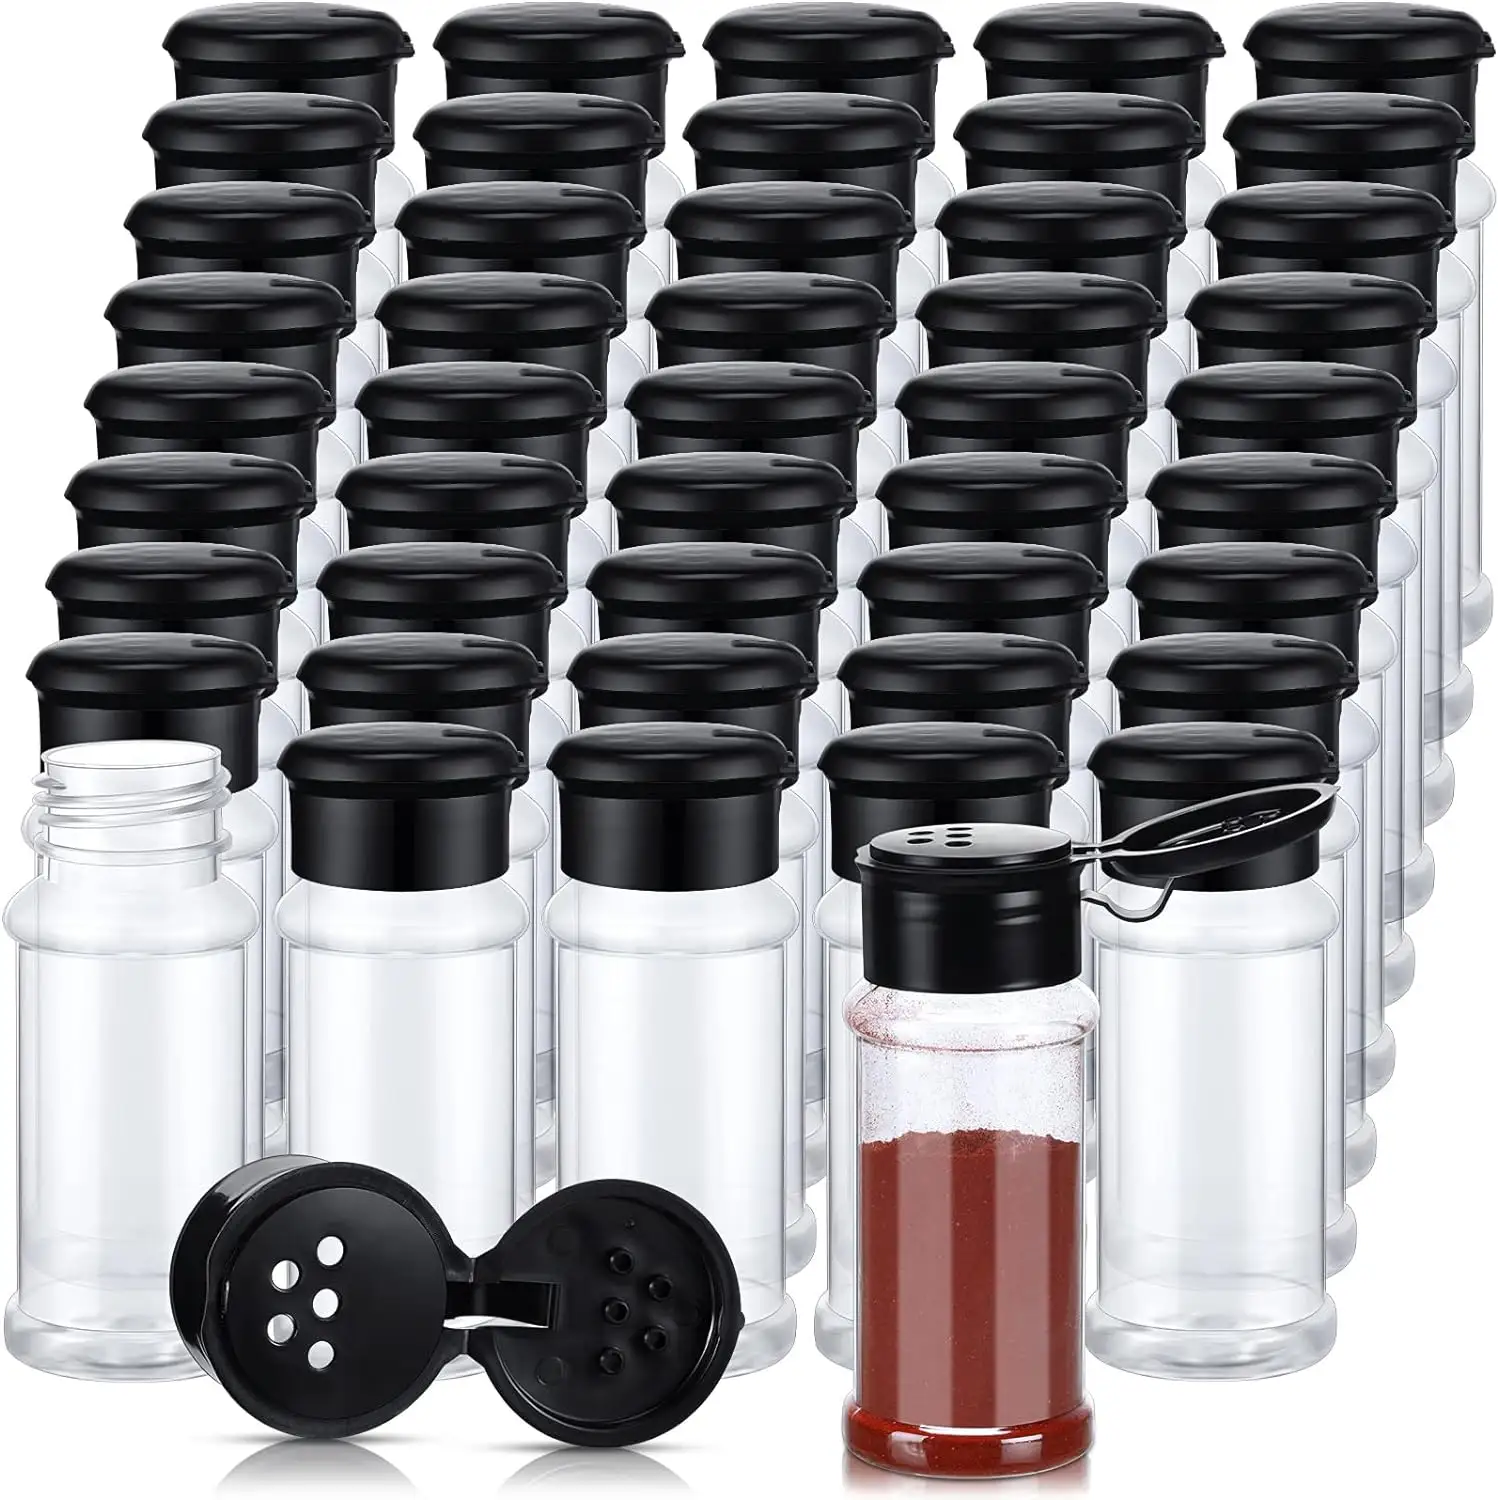 3OZ plastik baharat kavanoz 35g/60g PET şişeler siyah elek kapaklı baharat kavanoz seti baharat saklamak için Shaker kapaklar